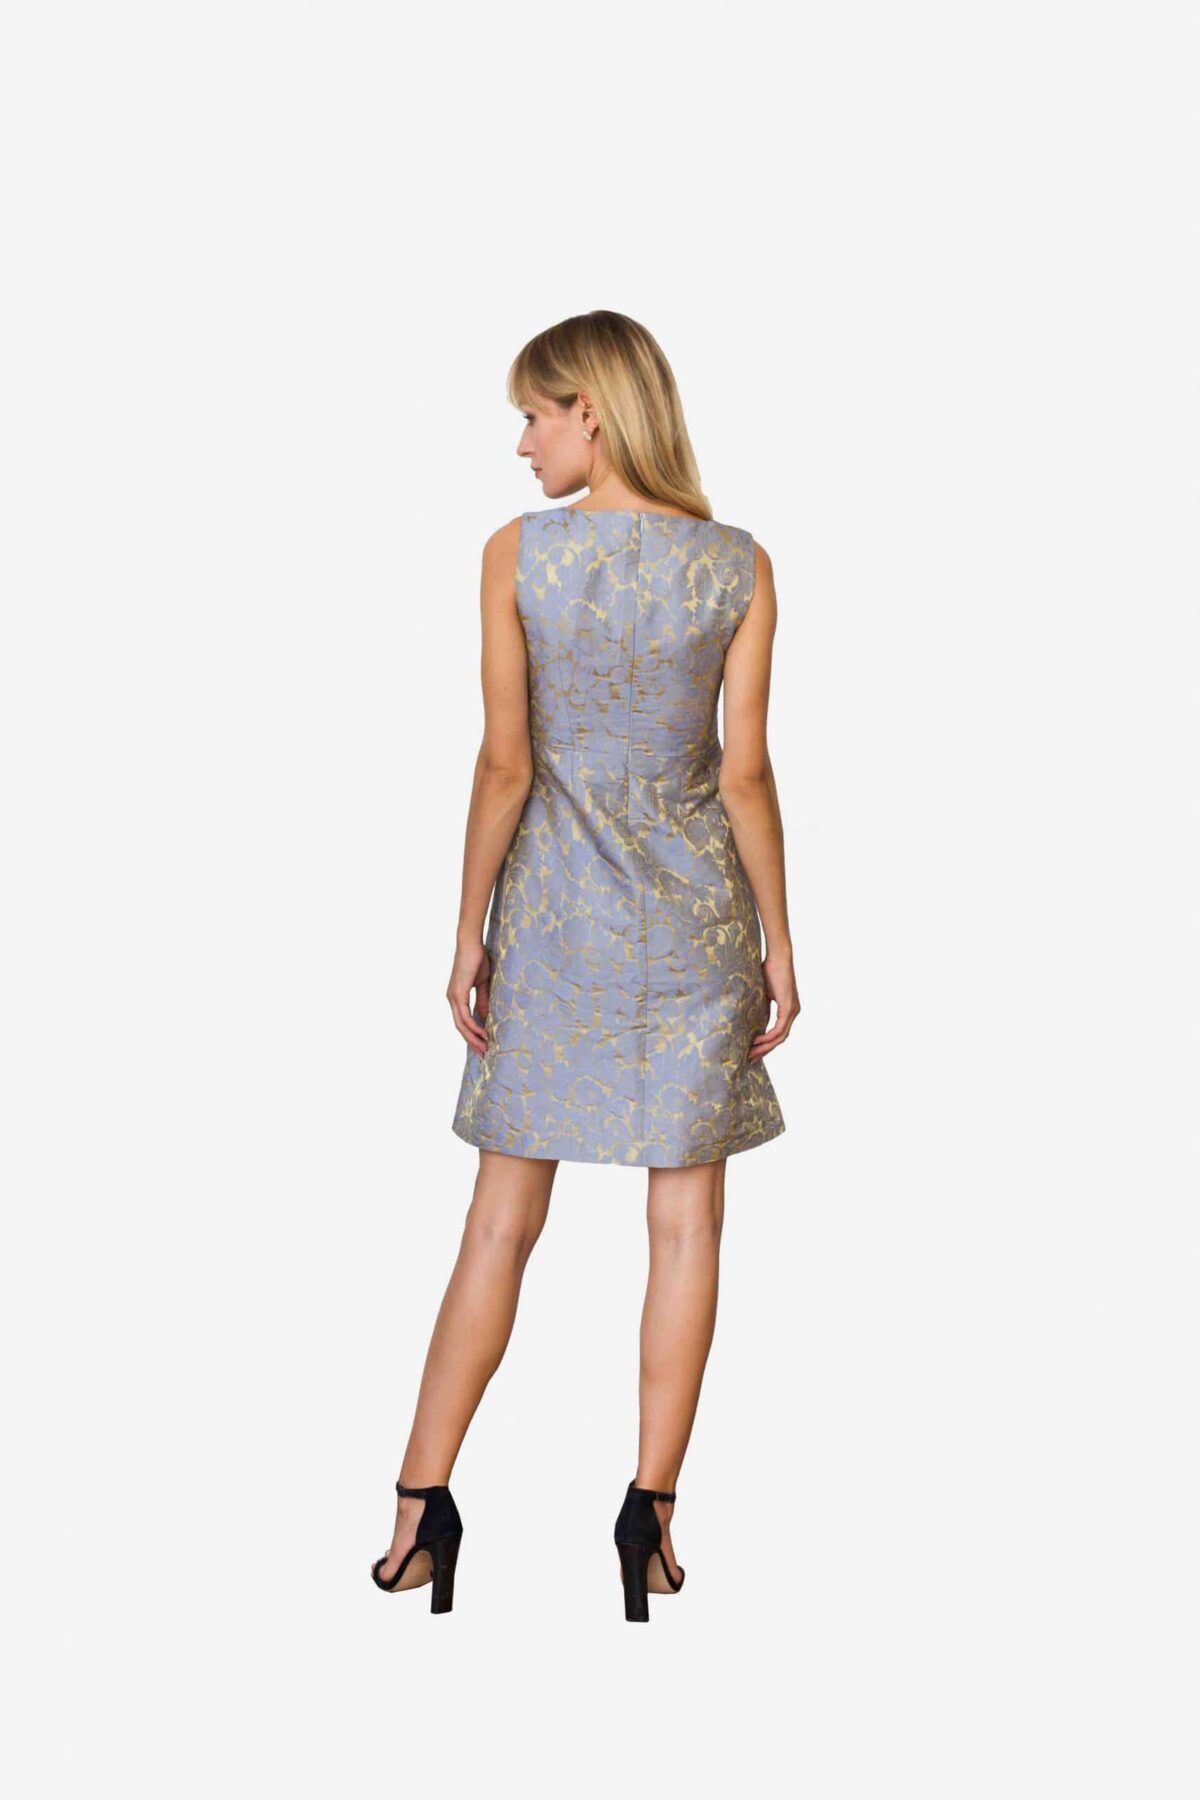 Kleid Madeleine von SANOGE. Elegantes Etuikleid aus Jacquard Stoff in blau und gold. Nachhaltige Mode.